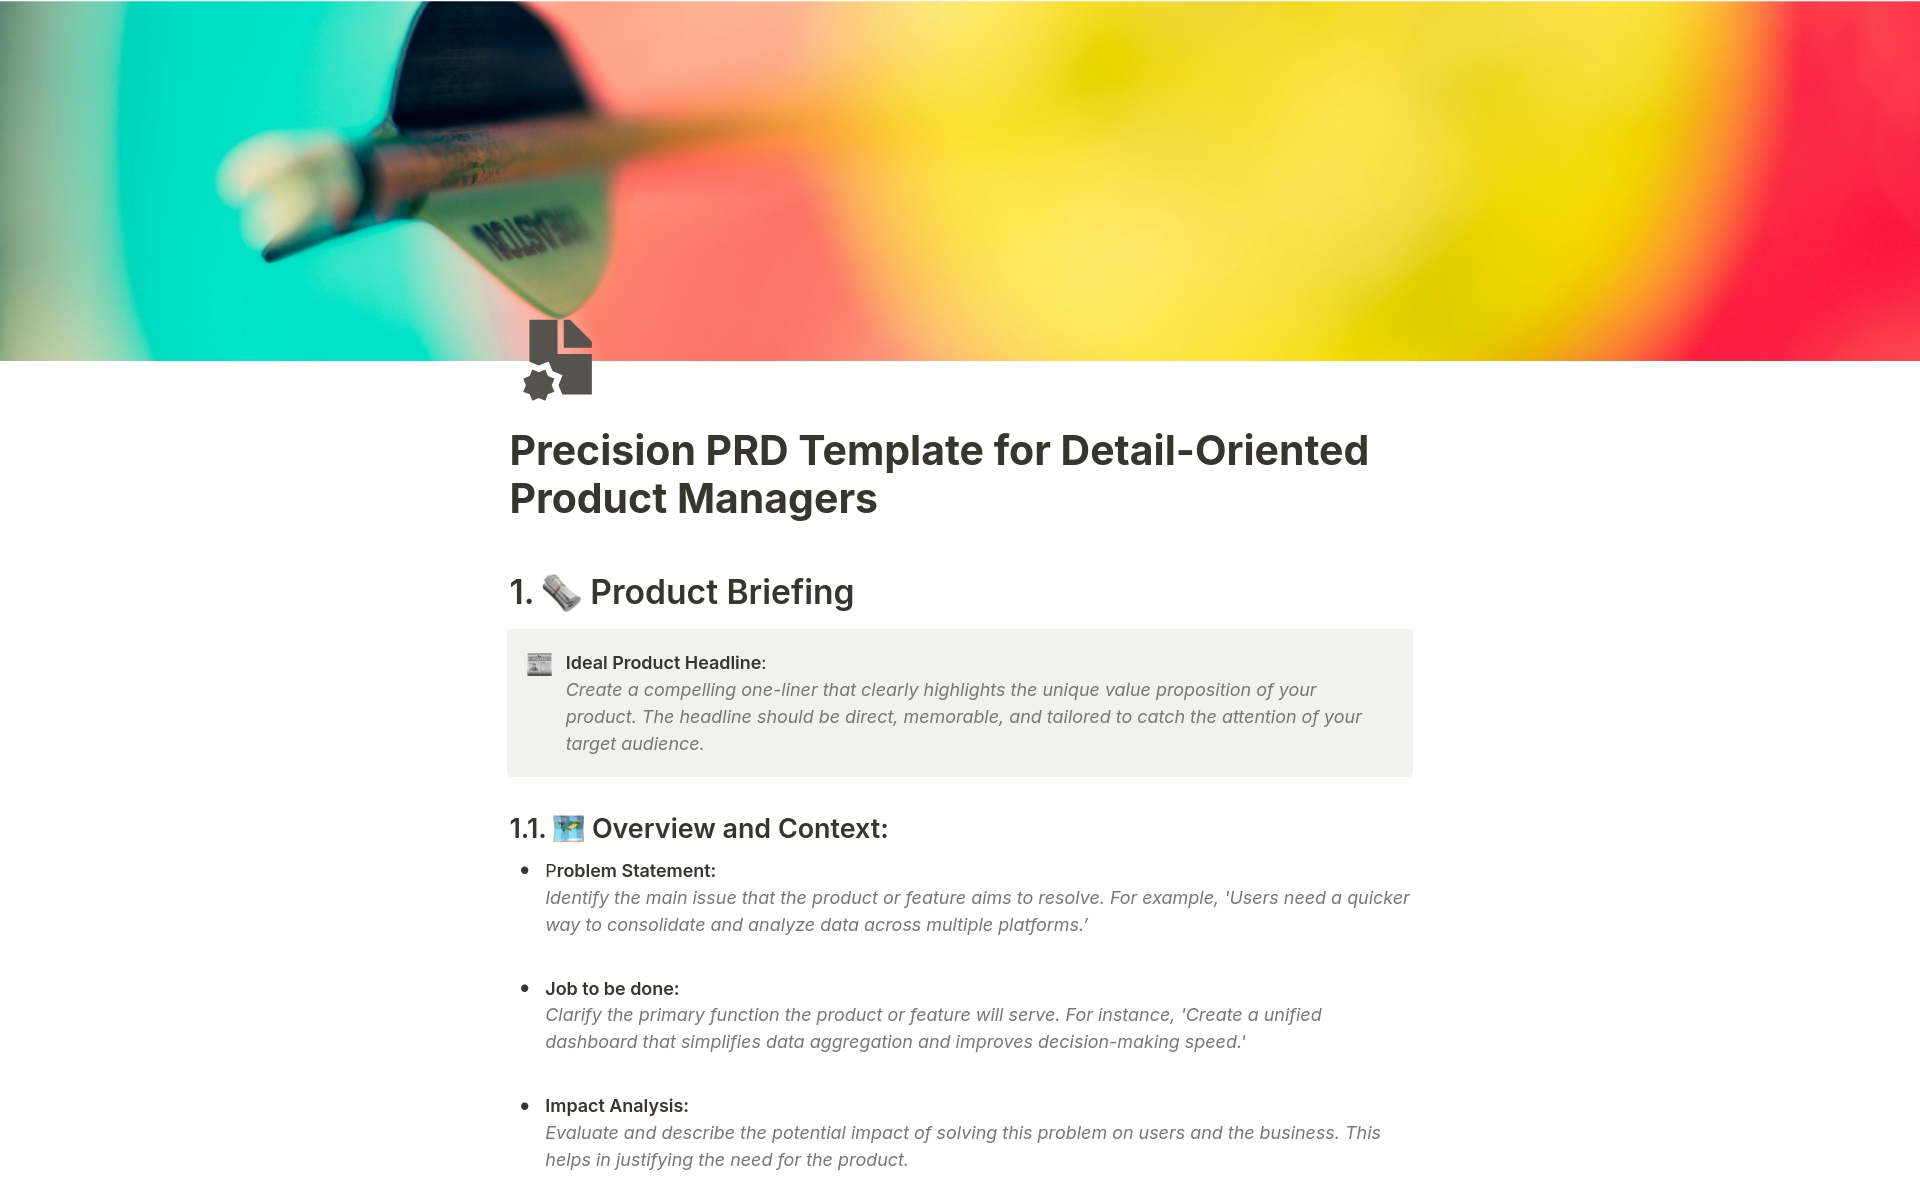 Uma prévia do modelo para Precision PRD Template for Detail-Oriented PMs